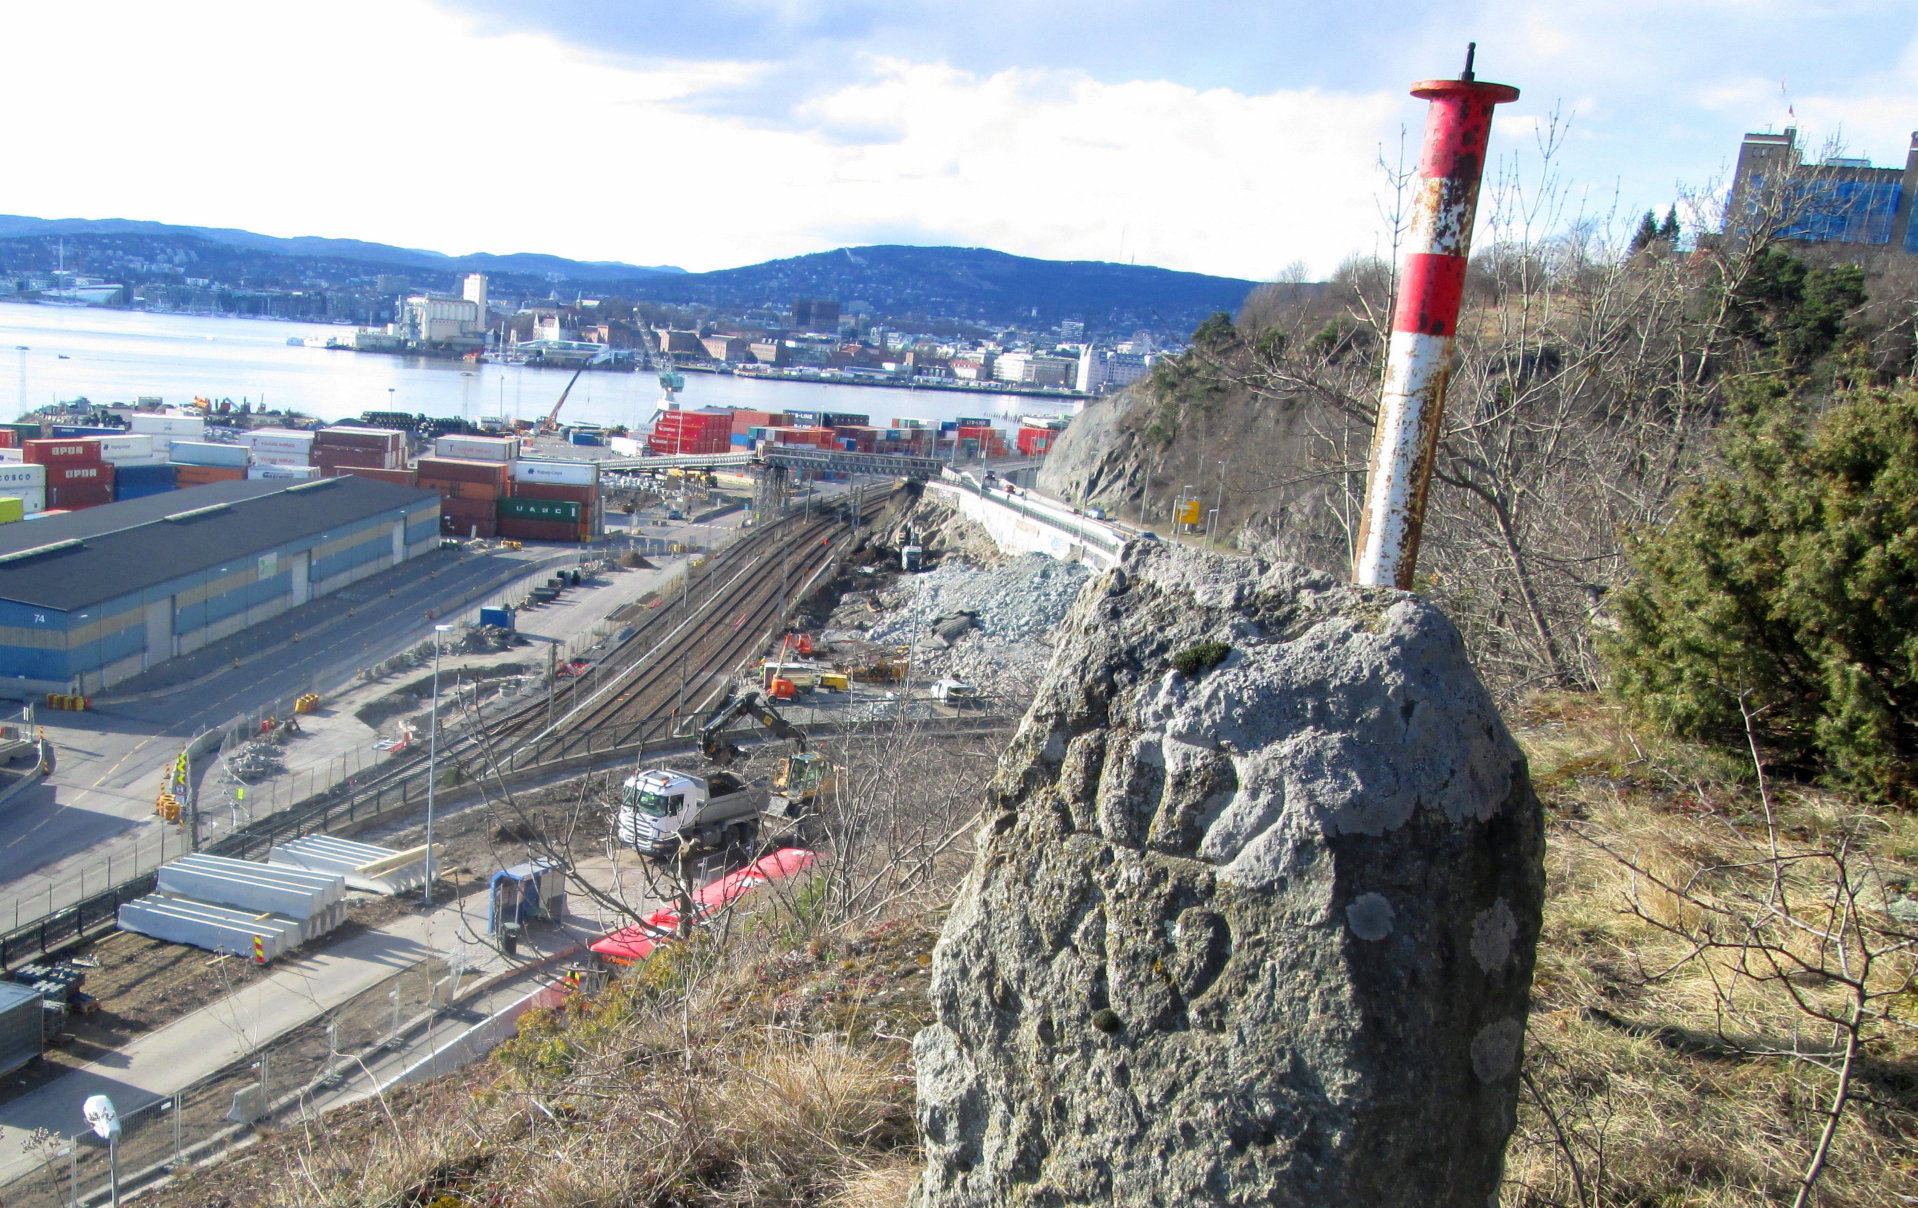 81 grensesteiner markerte den nye bygrensa i 1878. Rundt halvparten er bevart. Stein nummer 2 står fortsatt i Ekebergskråningen ovenfor Mosseveien, mellom Sjursøya og Karlsborgveien. De fleste av steinene av grorudgranitt, sannsynligvis framstilt ved steinverkene i Groruddalen.